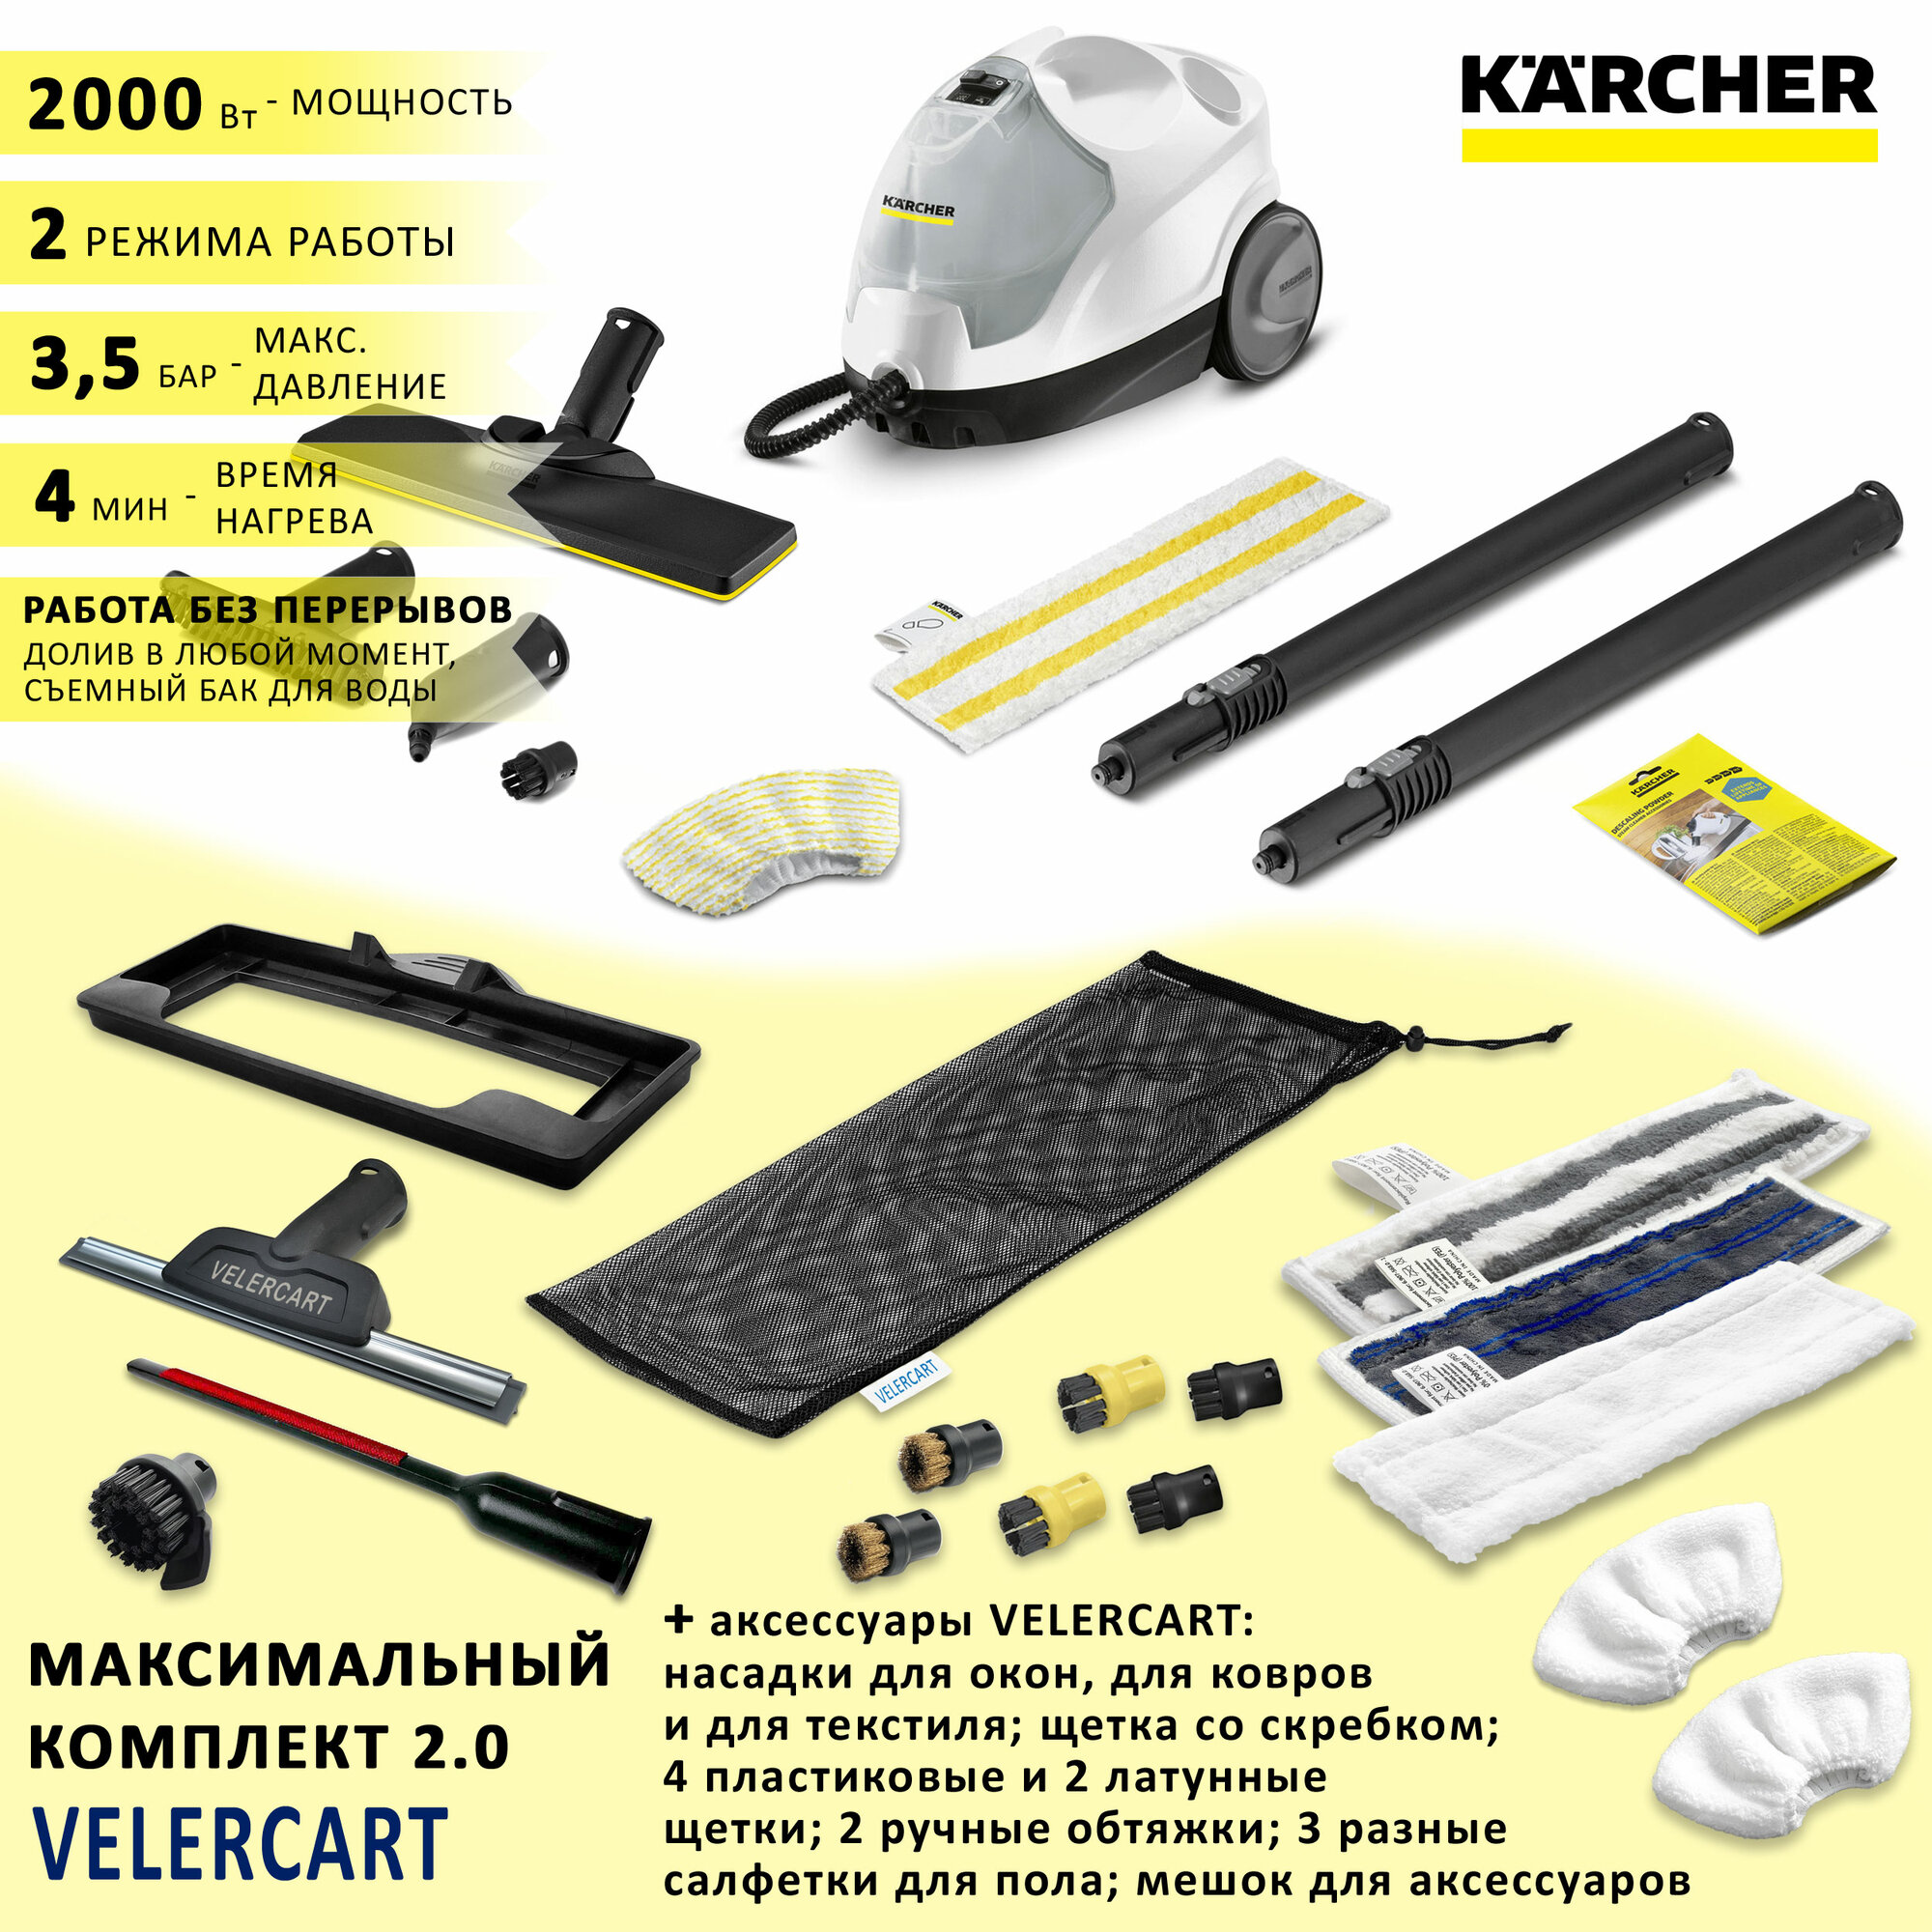 Пароочиститель KARCHER SC 4 EasyFix + аксессуары VELER: максимальная комплектация 2.0 1.512-450-max2